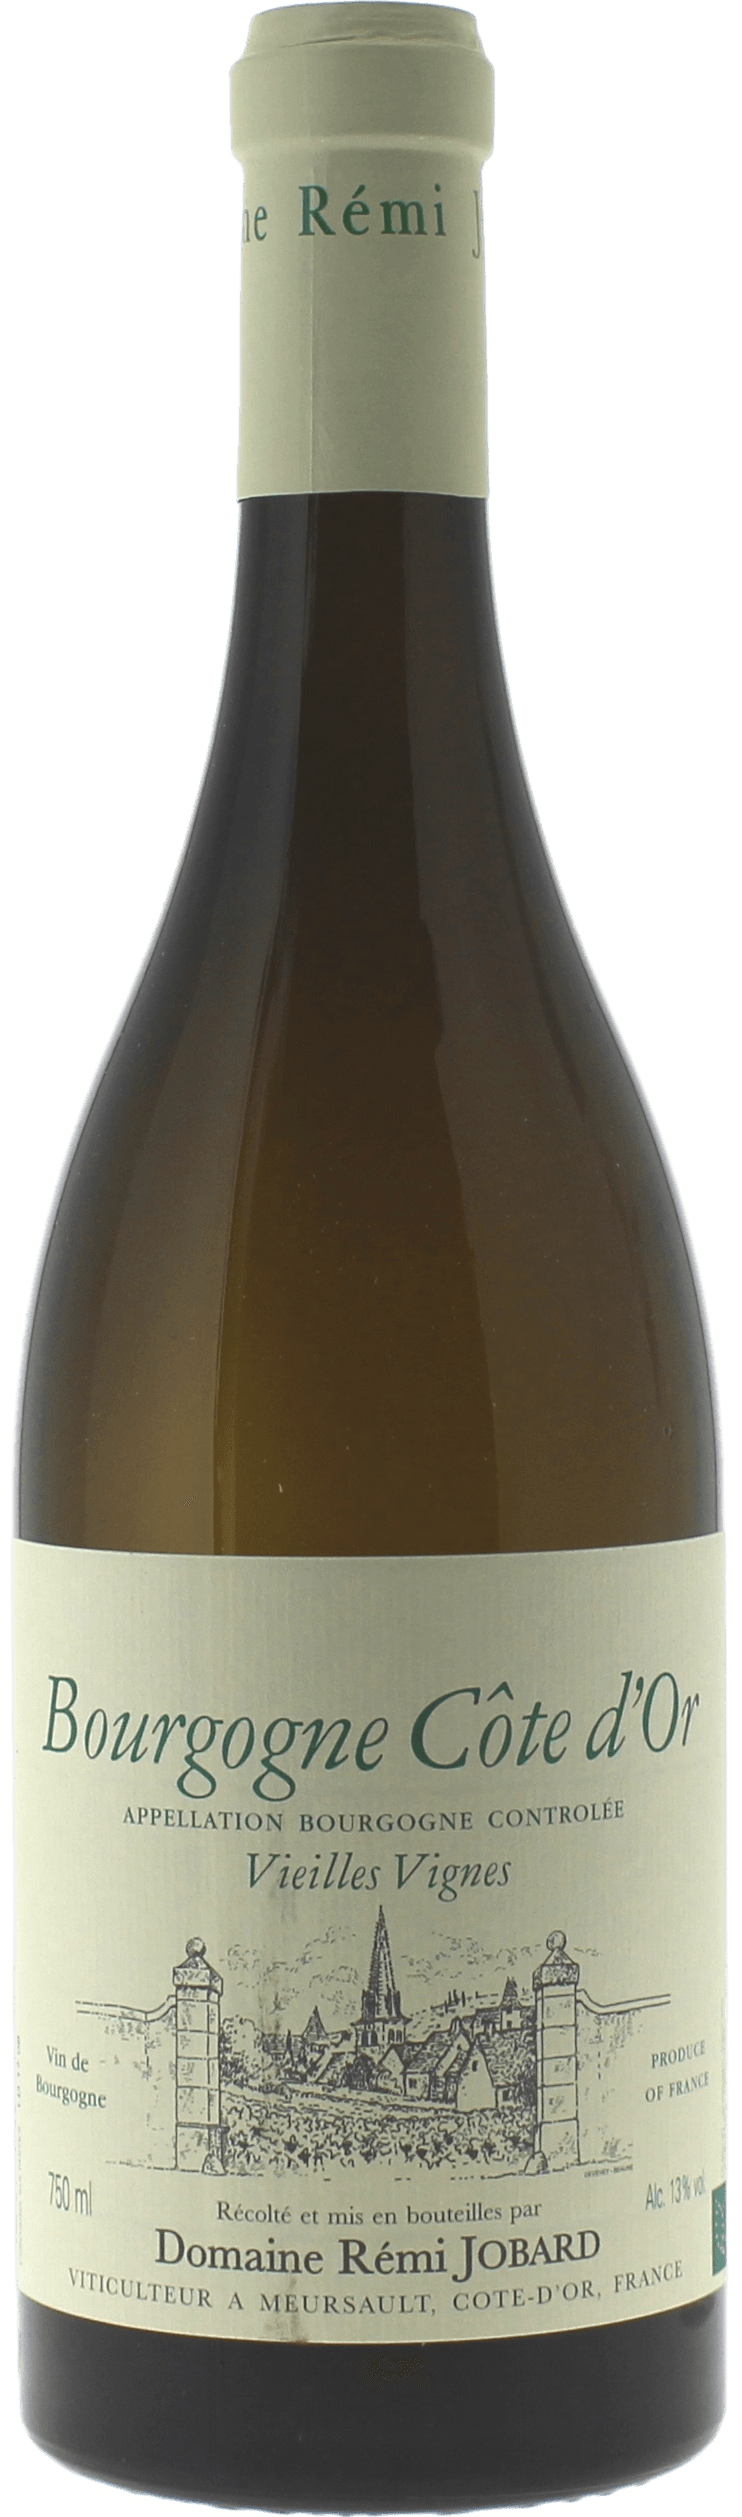 Bourgogne cte d'or 2018 Domaine JOBARD, Bourgogne blanc